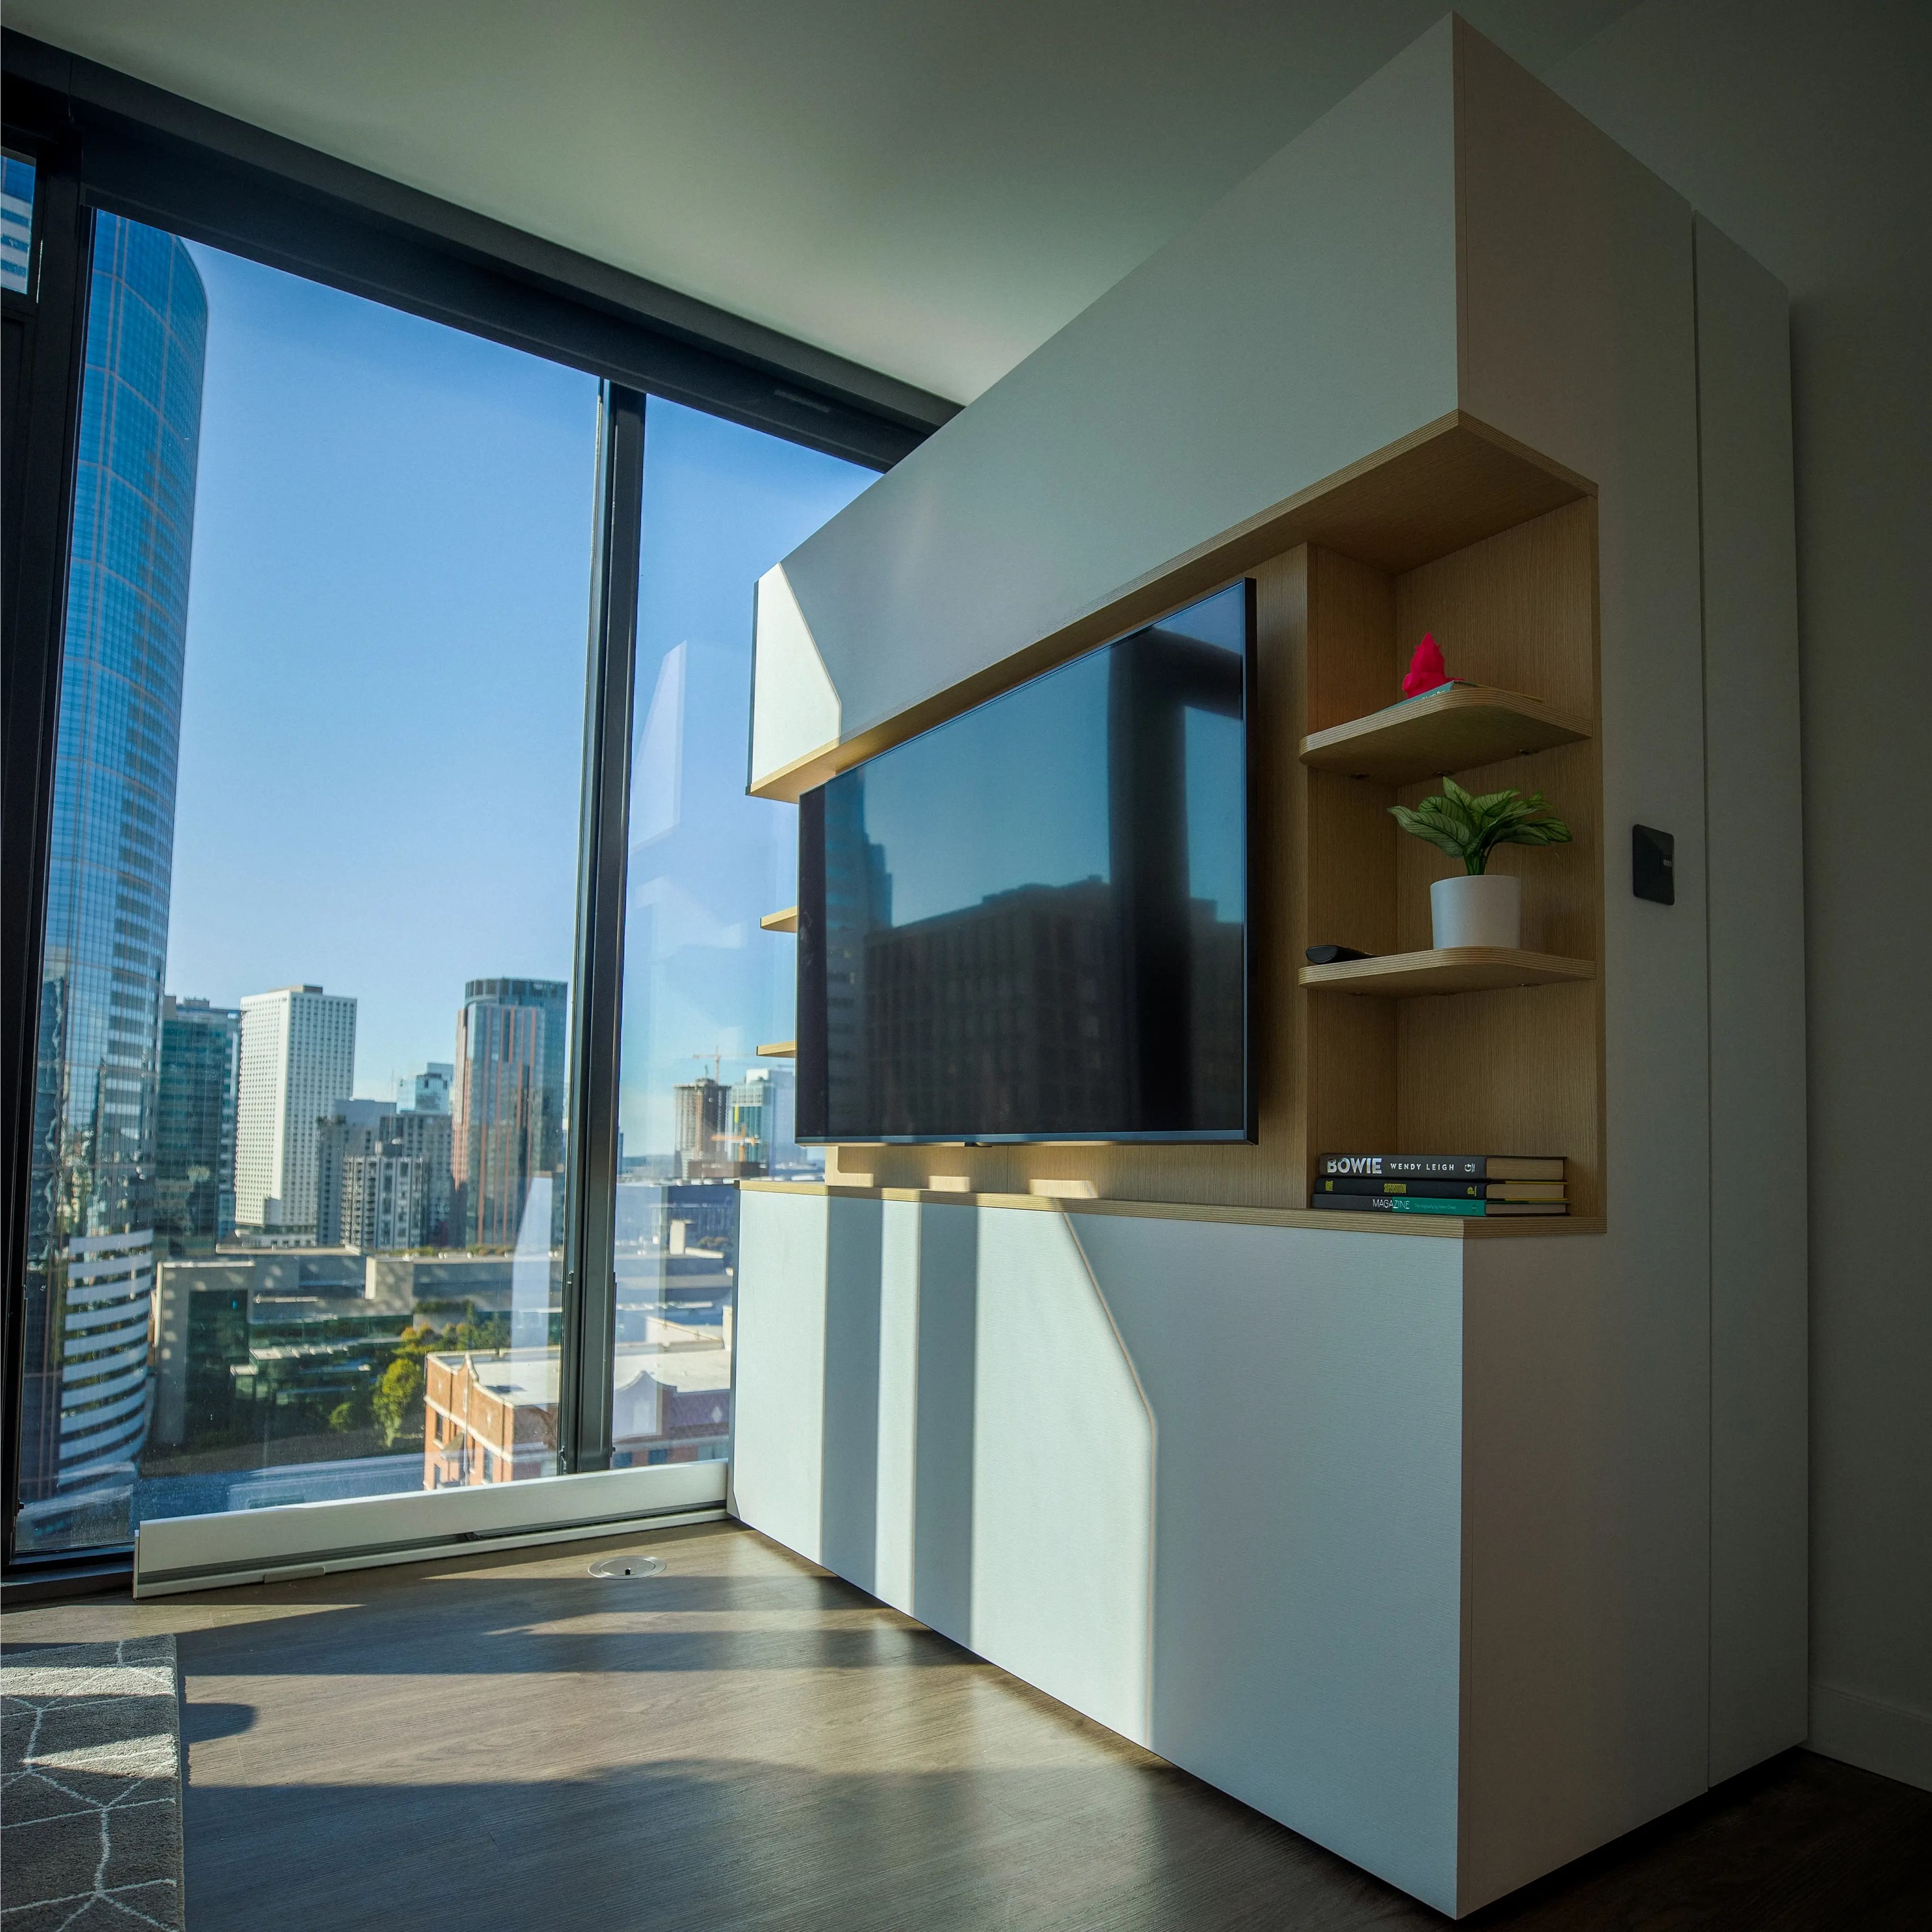 La vista de la televisión de un apartamento extensible.